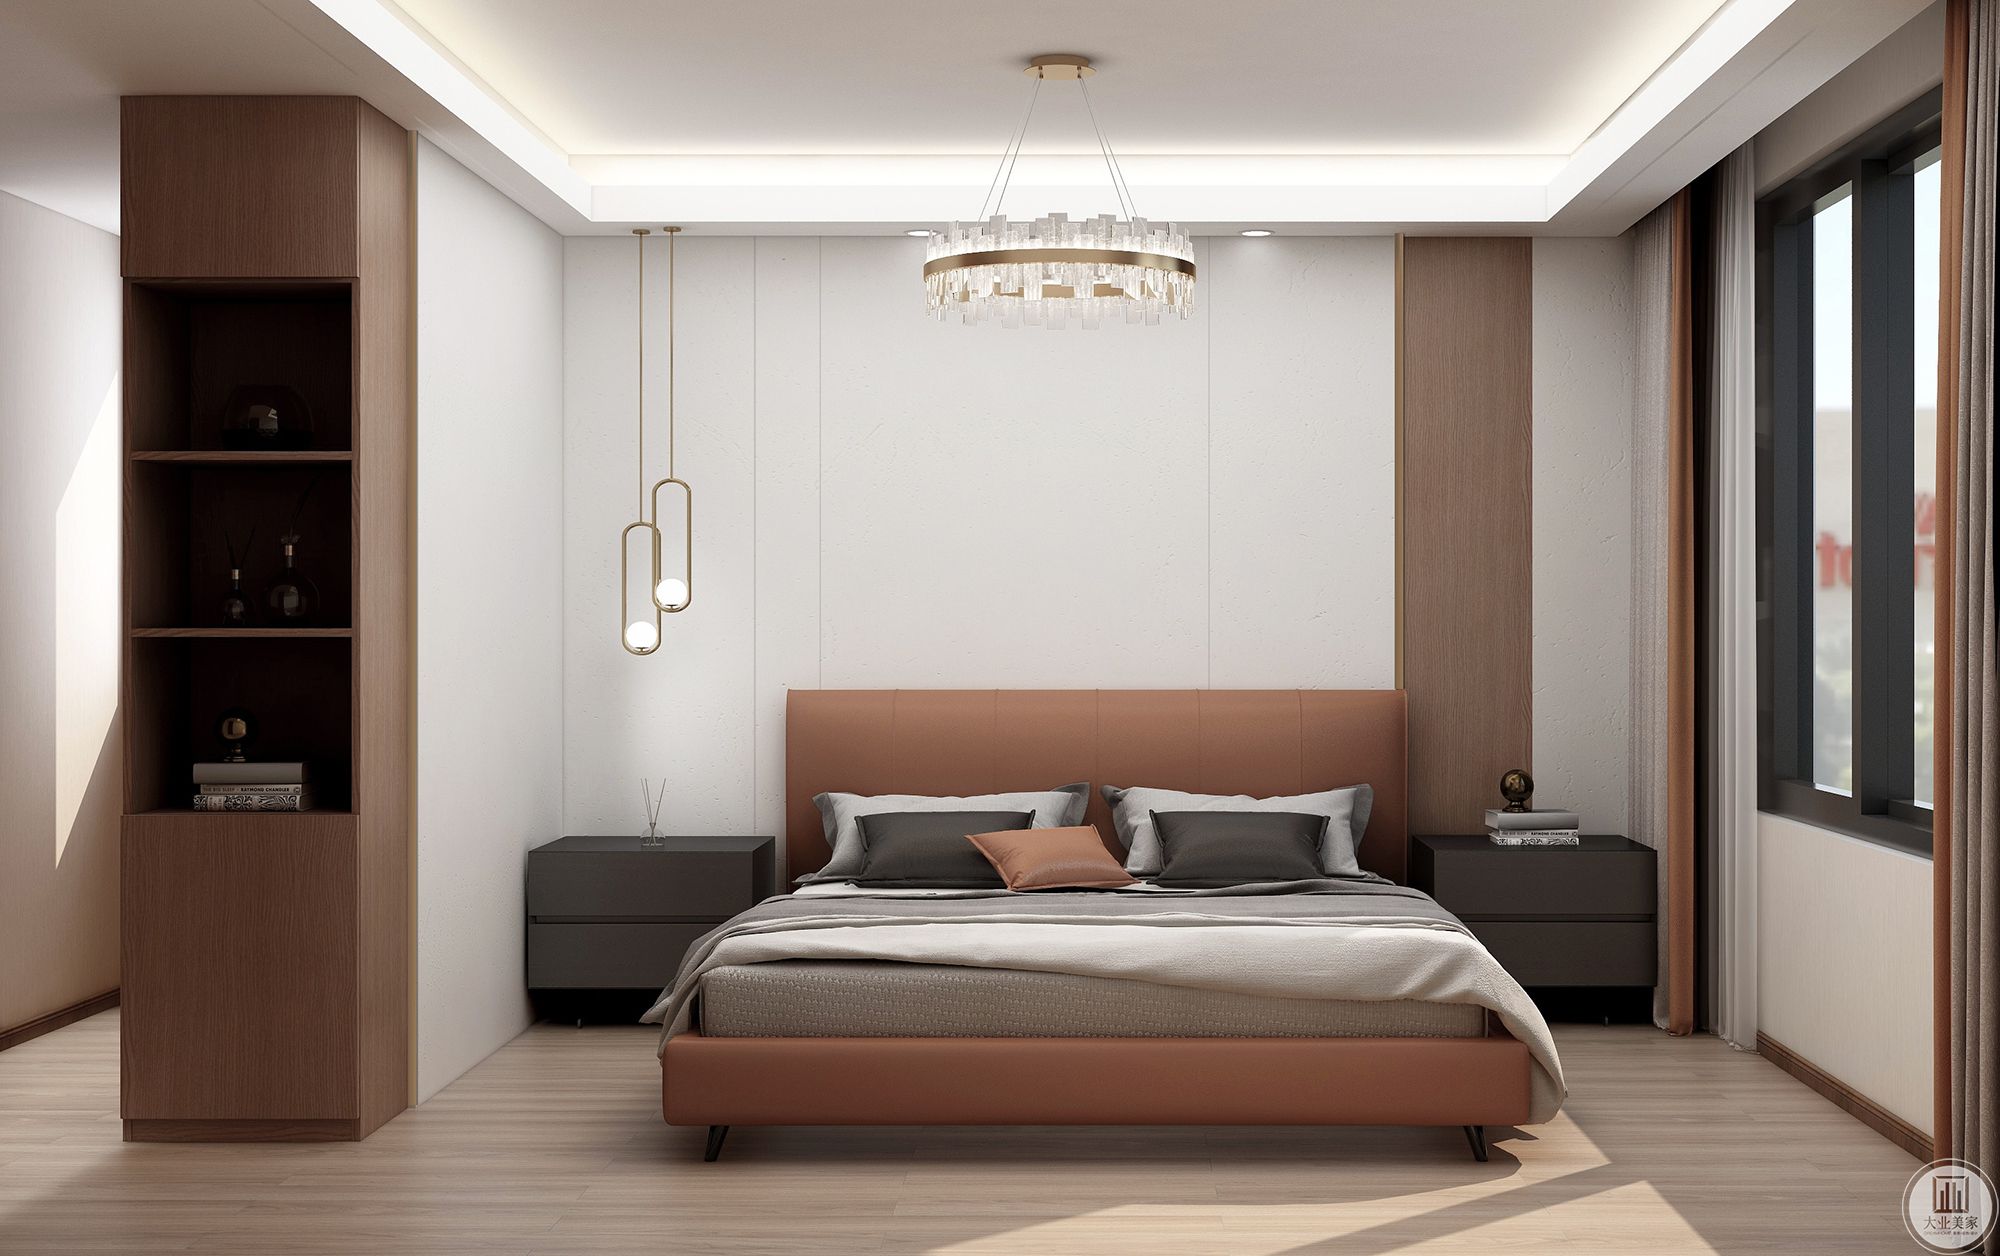 依照自带的柜子来做床头造型，让空间形成L型的整体，主卧室